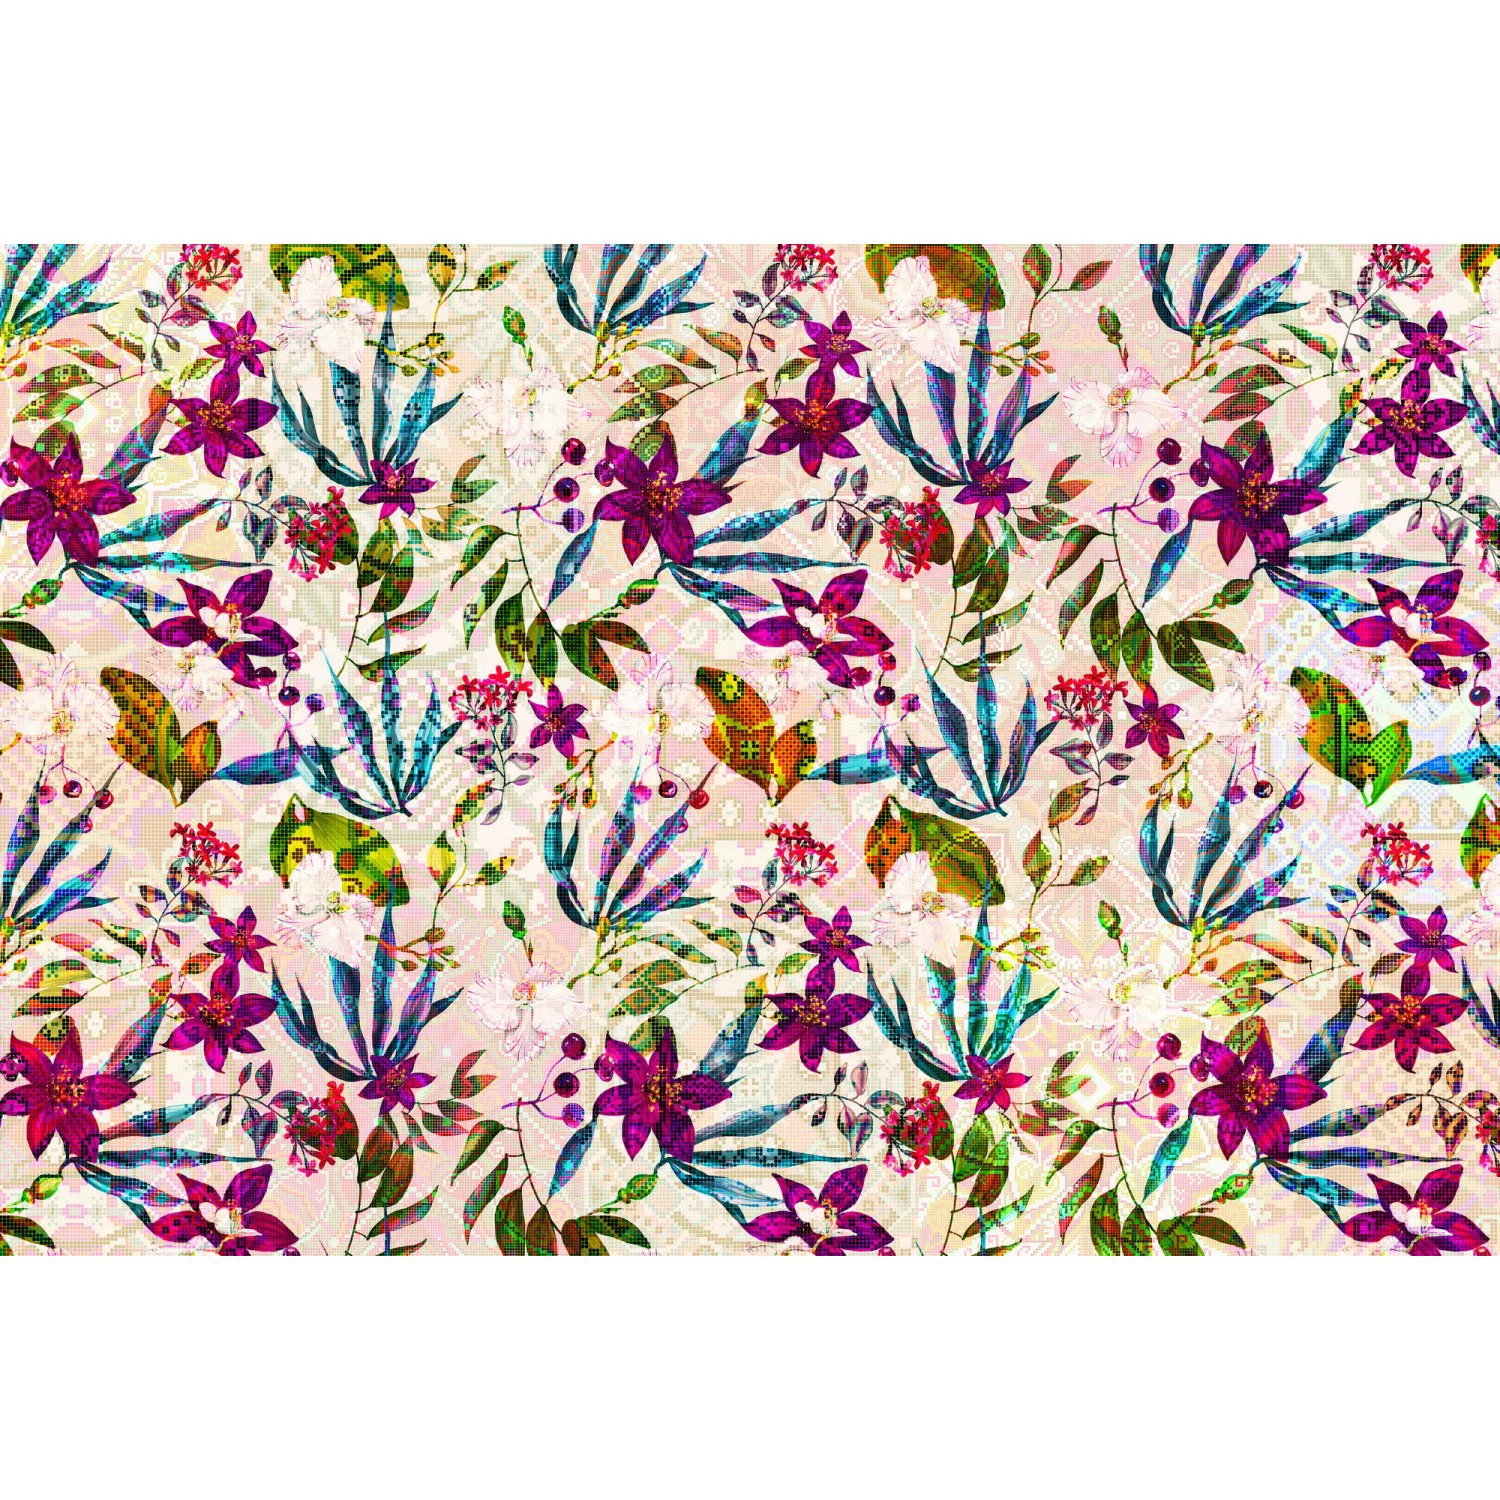 Fototapete Blumen Mosaik Grafik Bunt Rosa Violett 4,00 m x 2,70 m FSC® günstig online kaufen